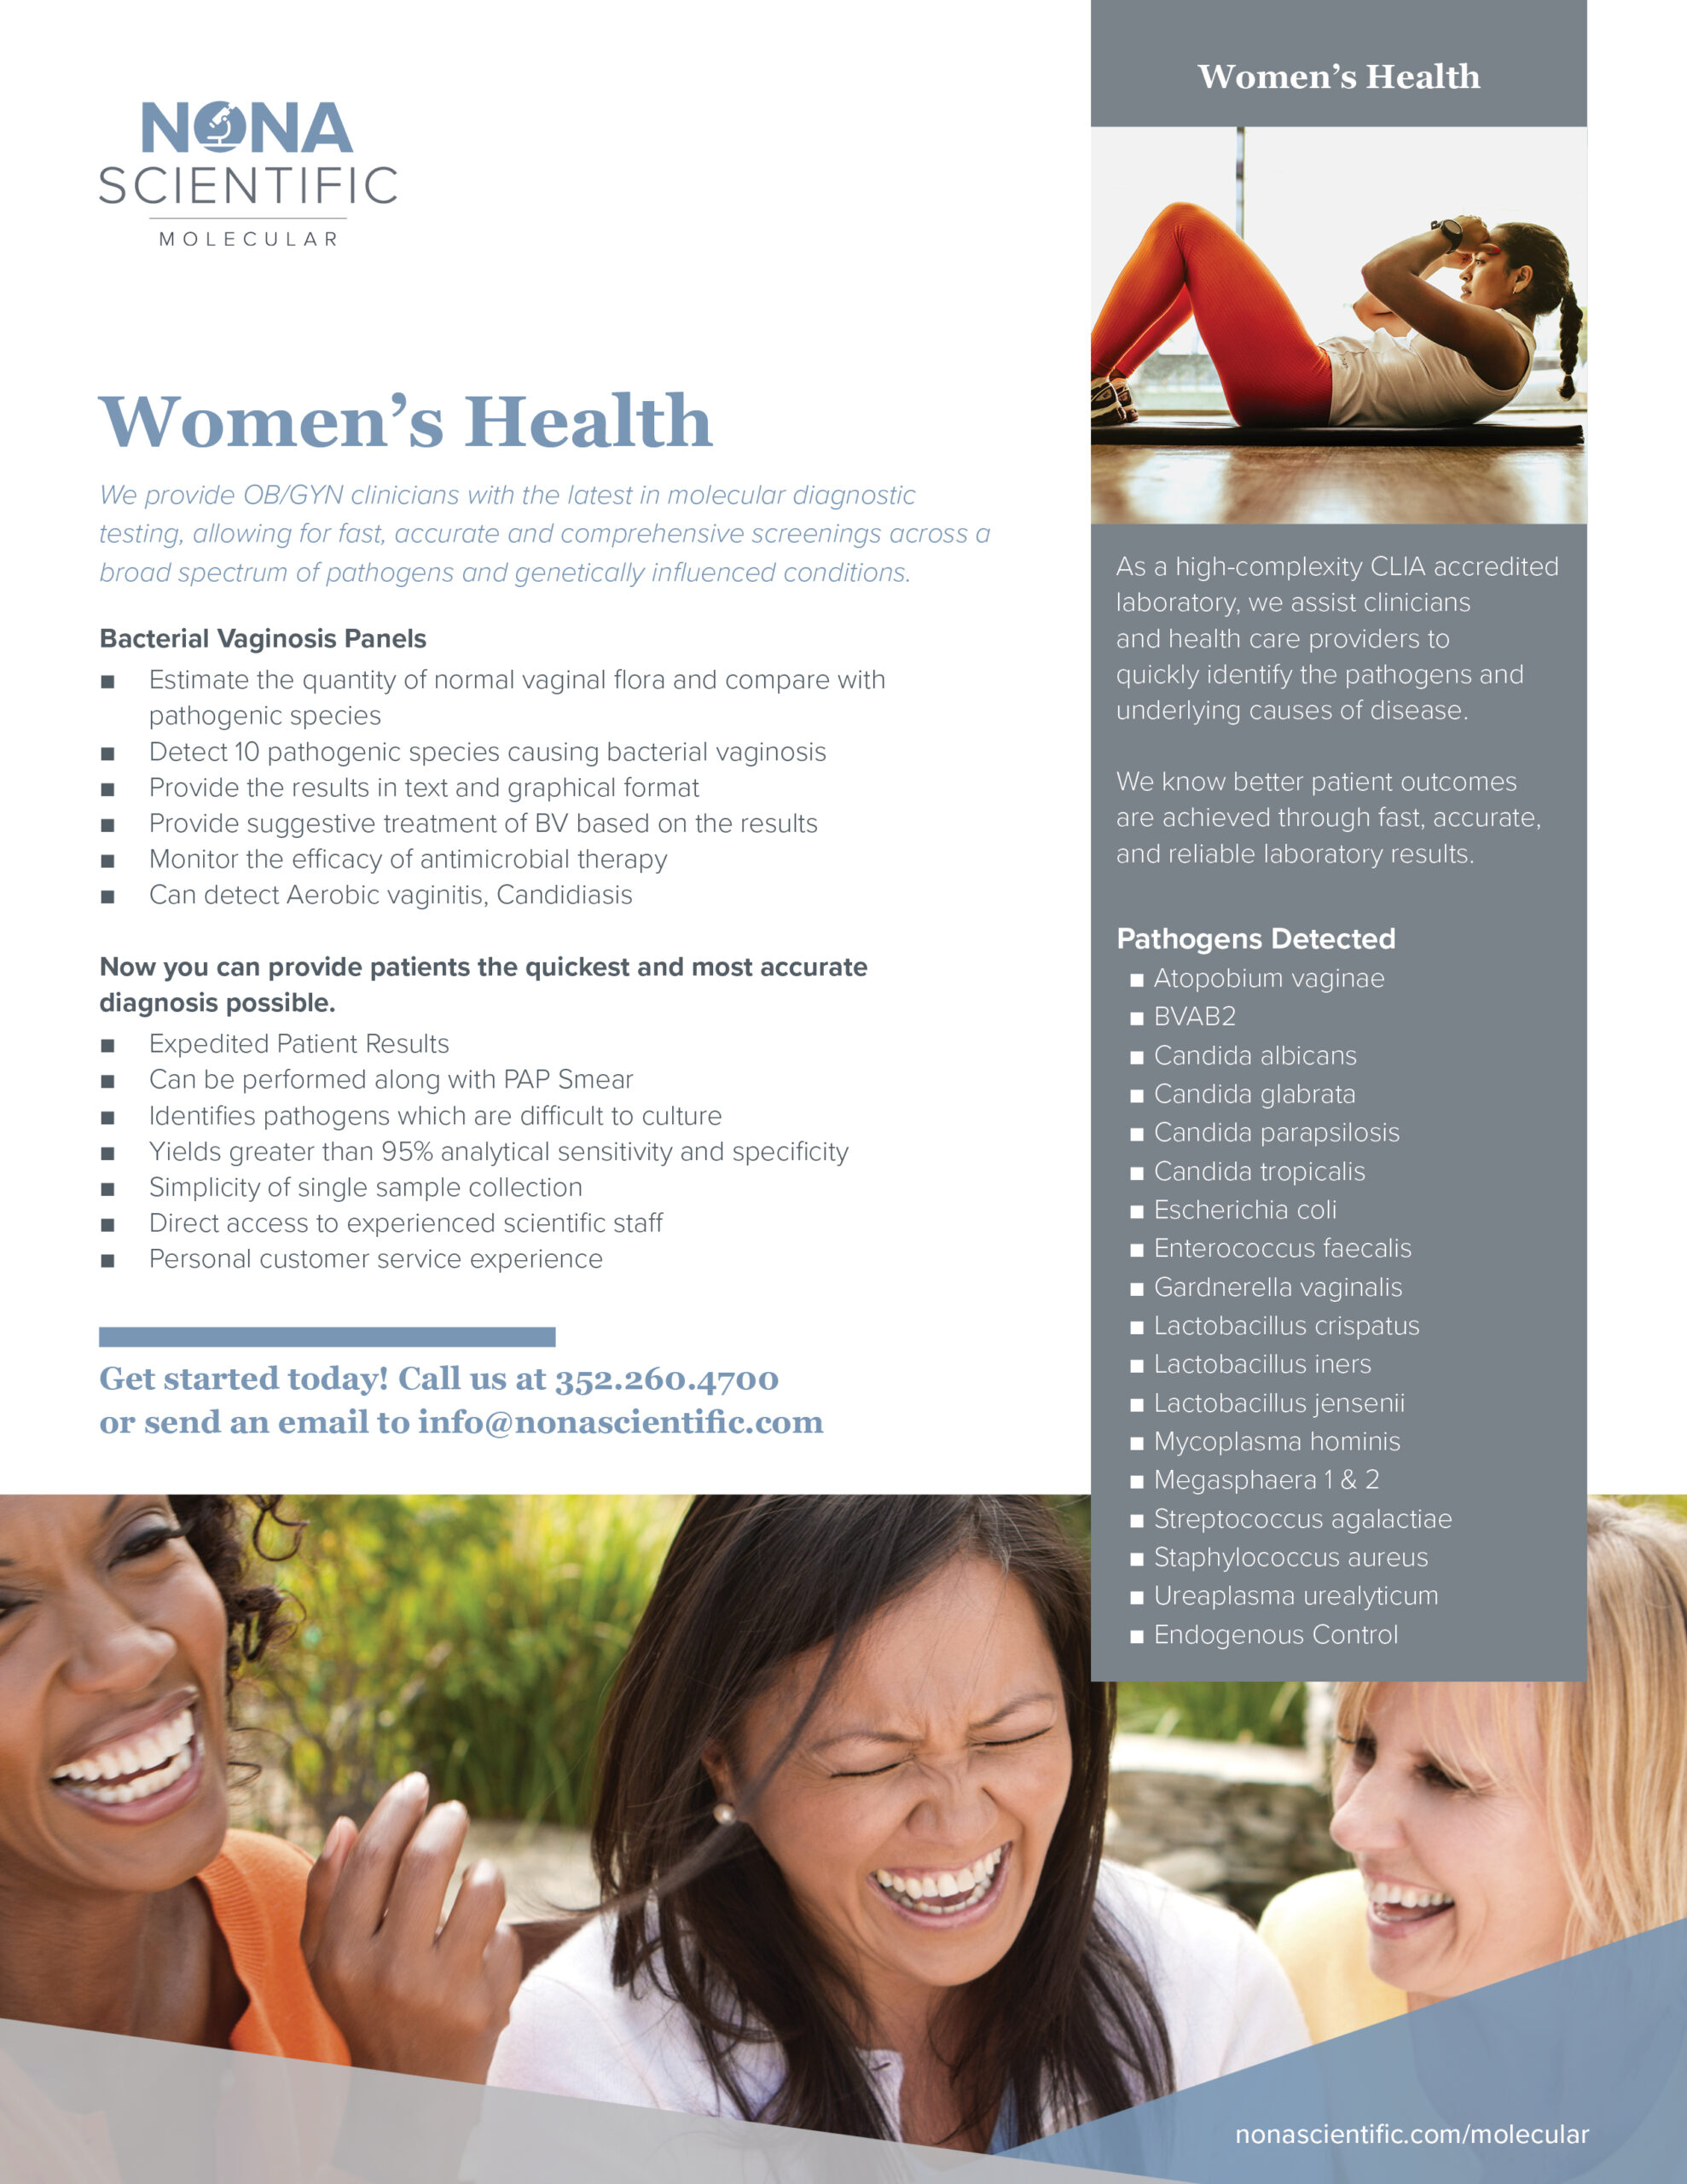 Nona Scientific Women's Health Panel Marketing